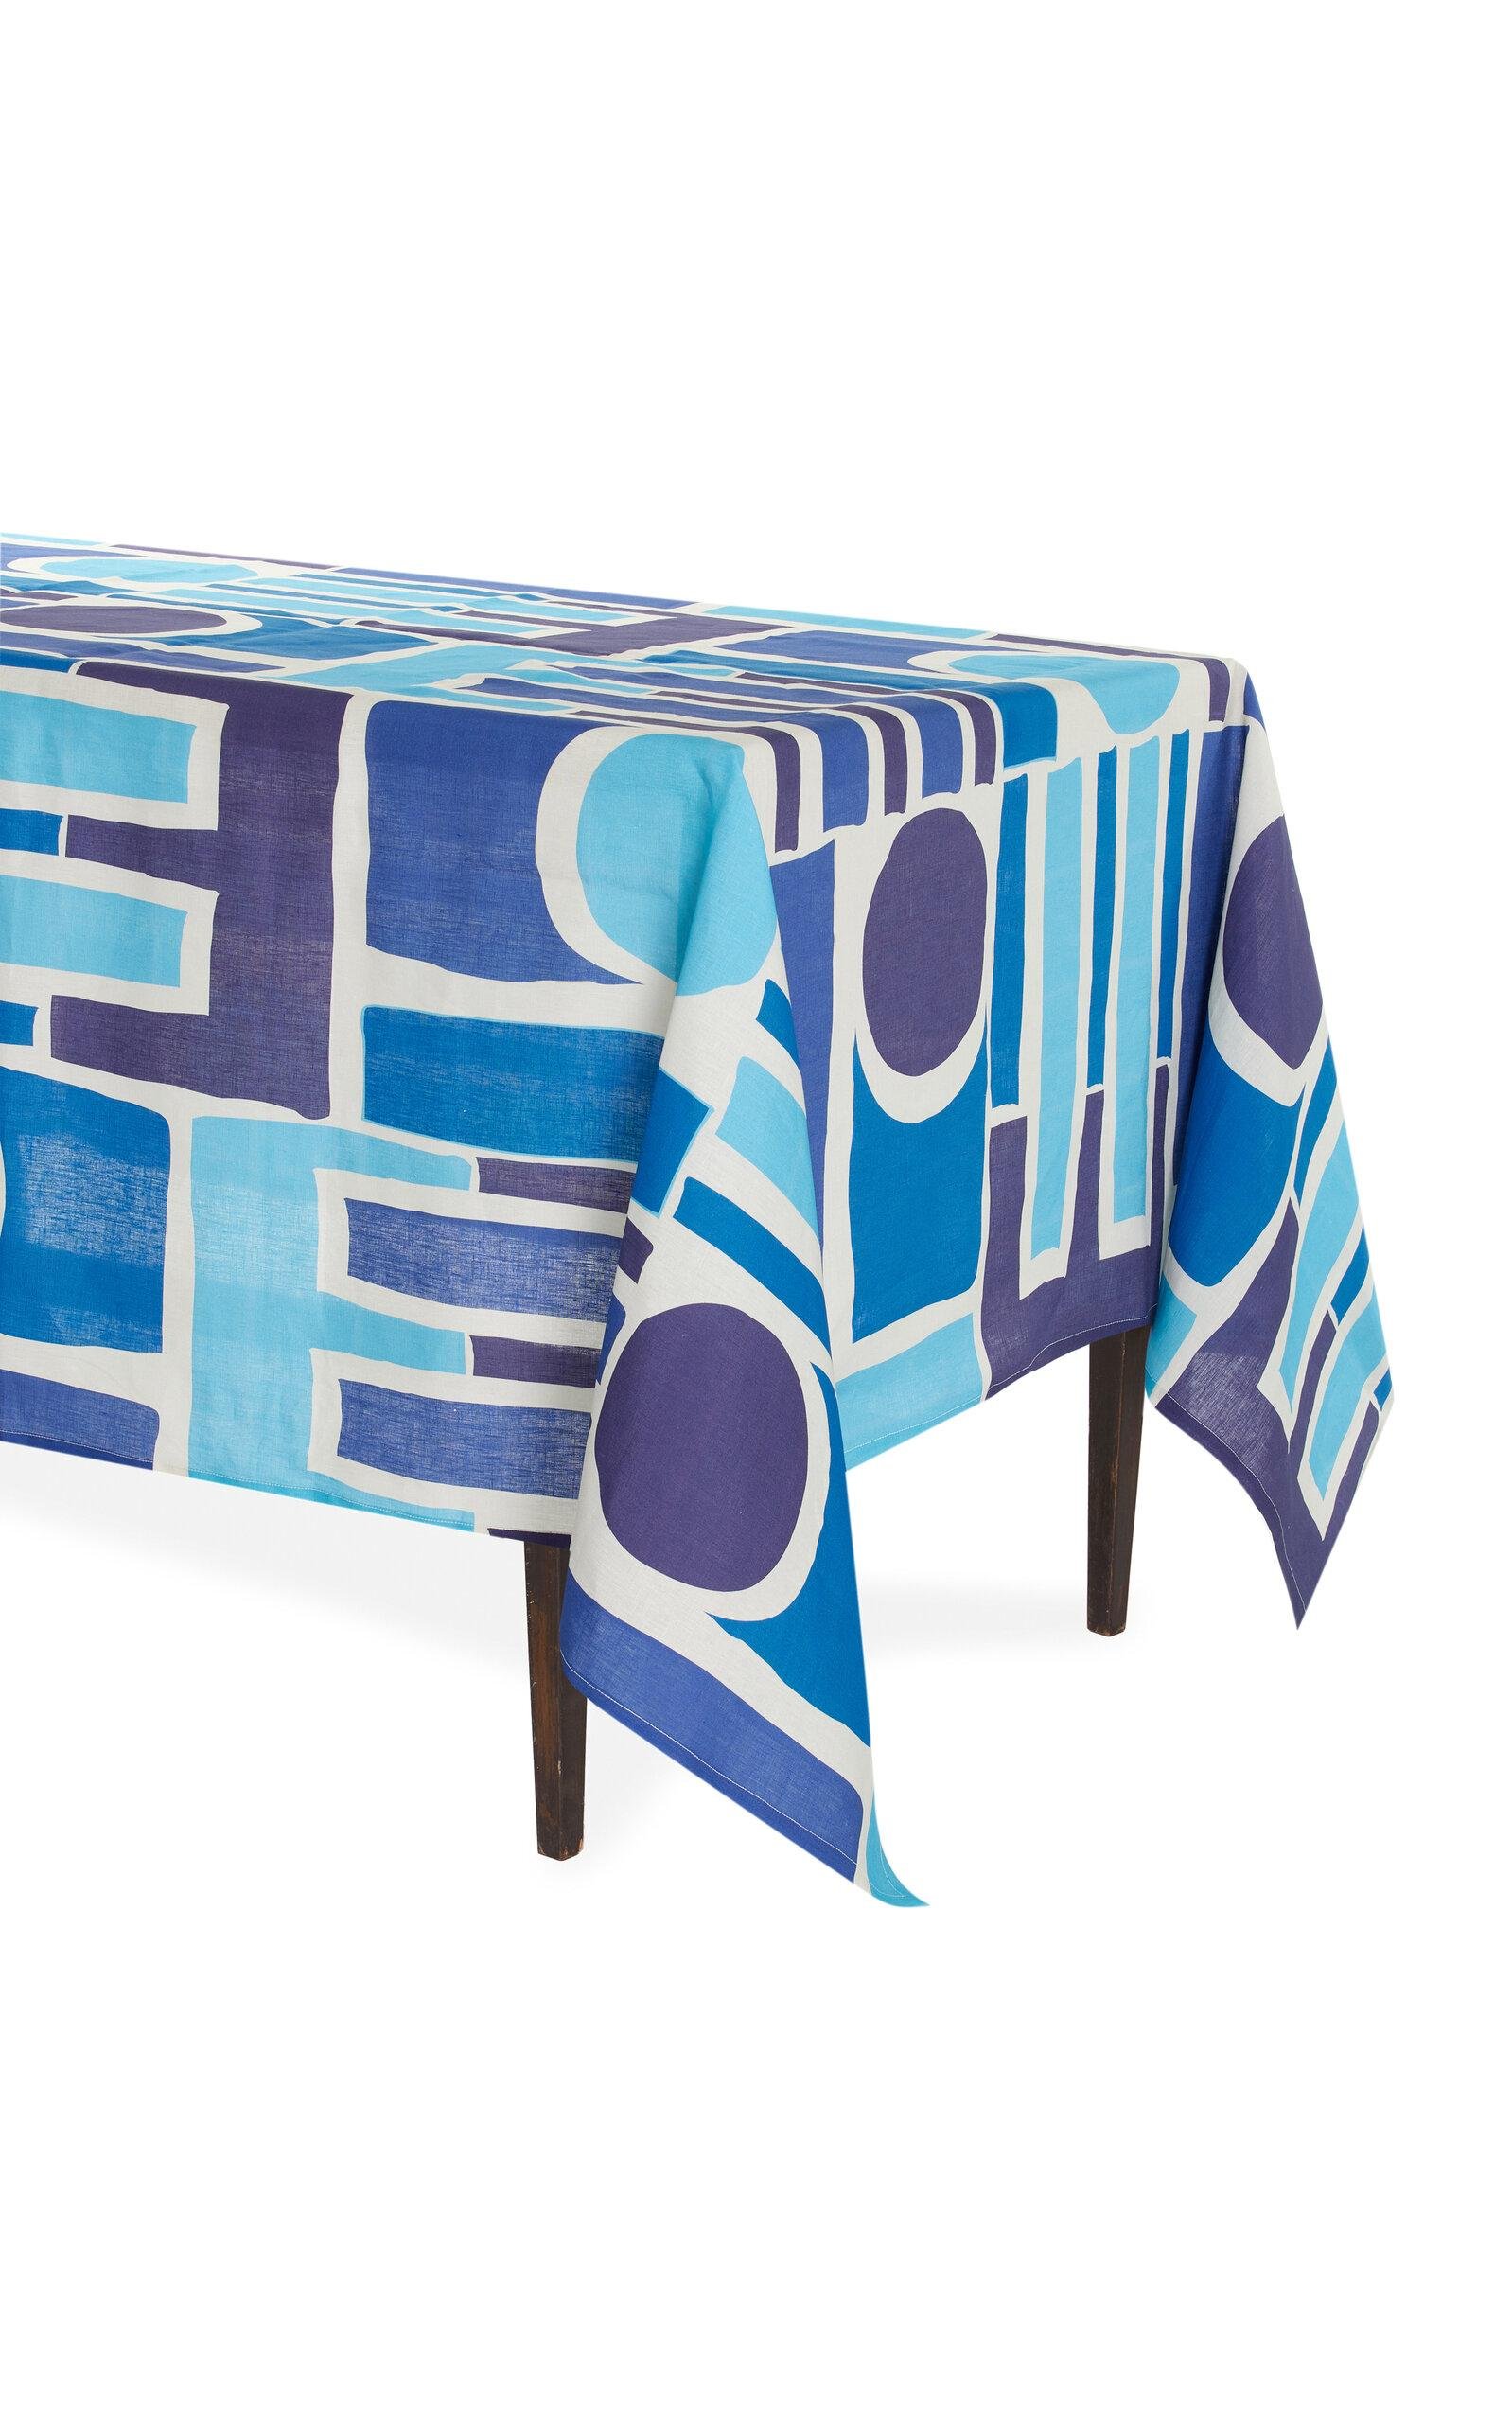 CRINI & SOPHIA - Shapes Large Linen Tablecloth - Blue - Moda Operandi by CRINI&SOPHIA